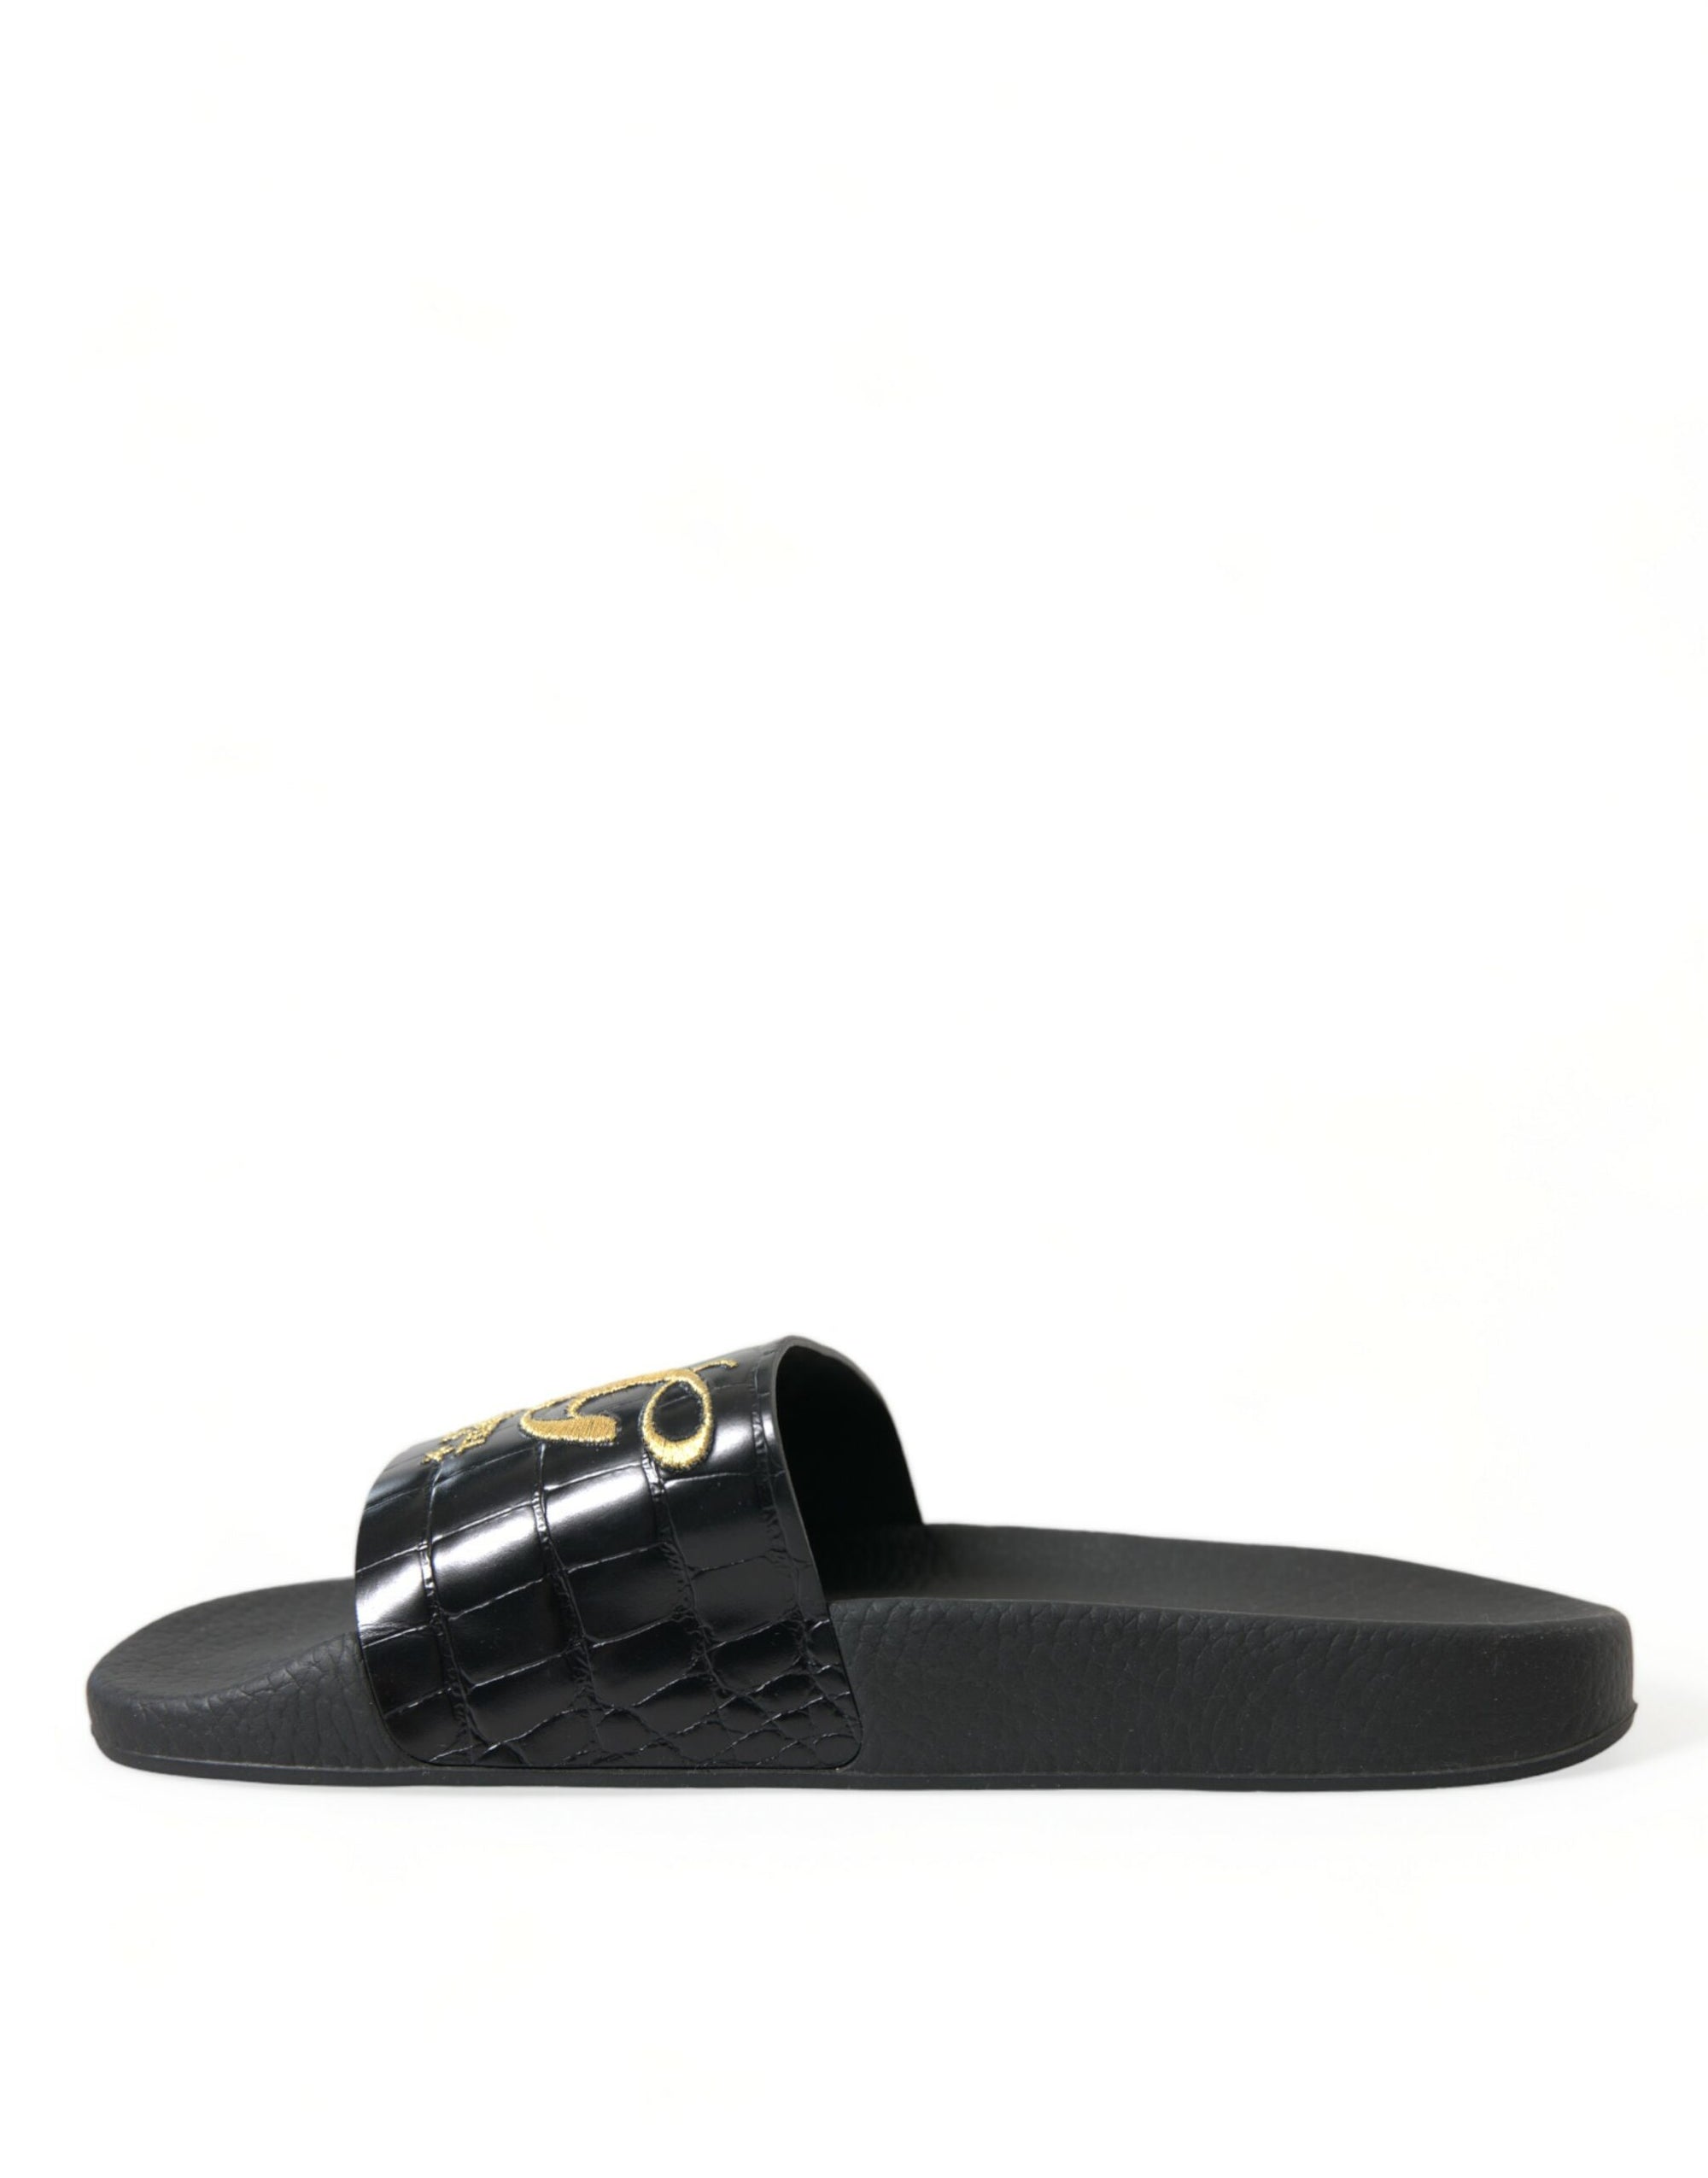 Elegant Black and Gold Leather Slides